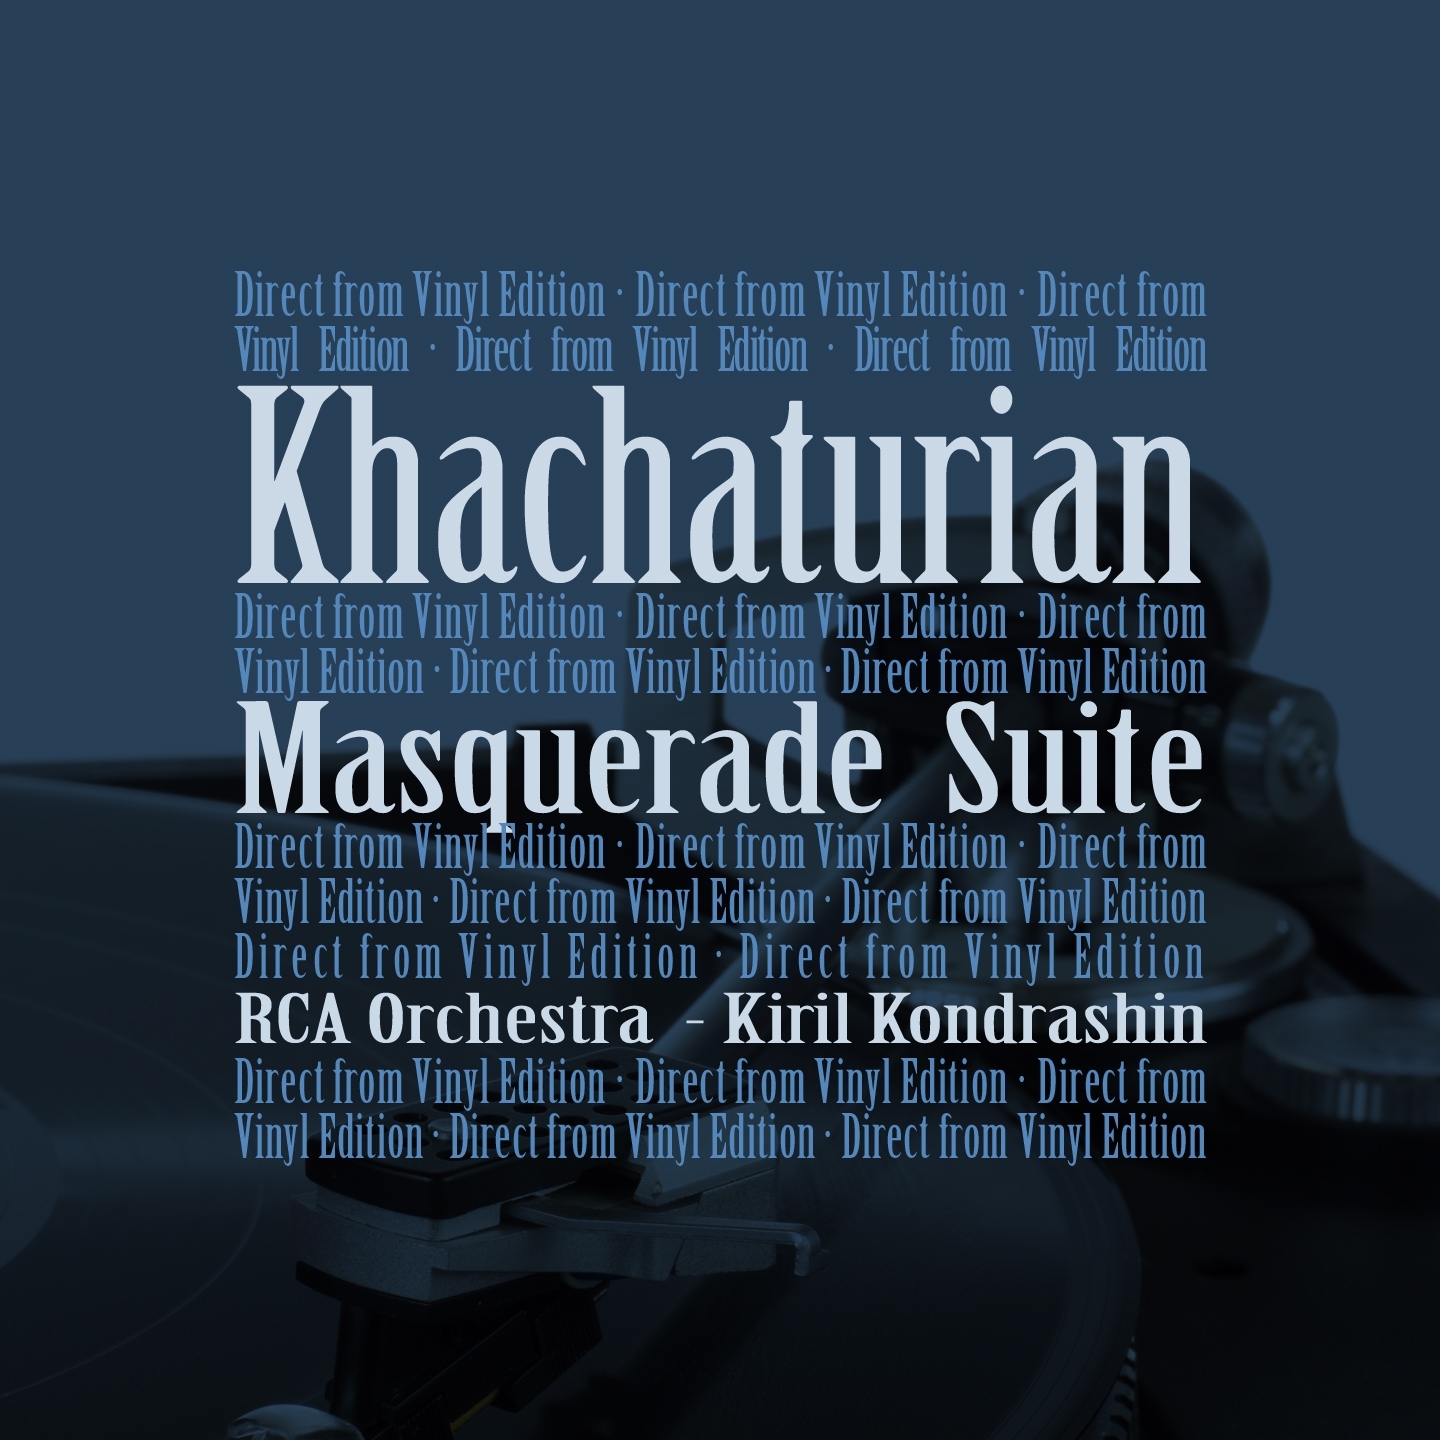 Masquerade Suite: II. Nocturne